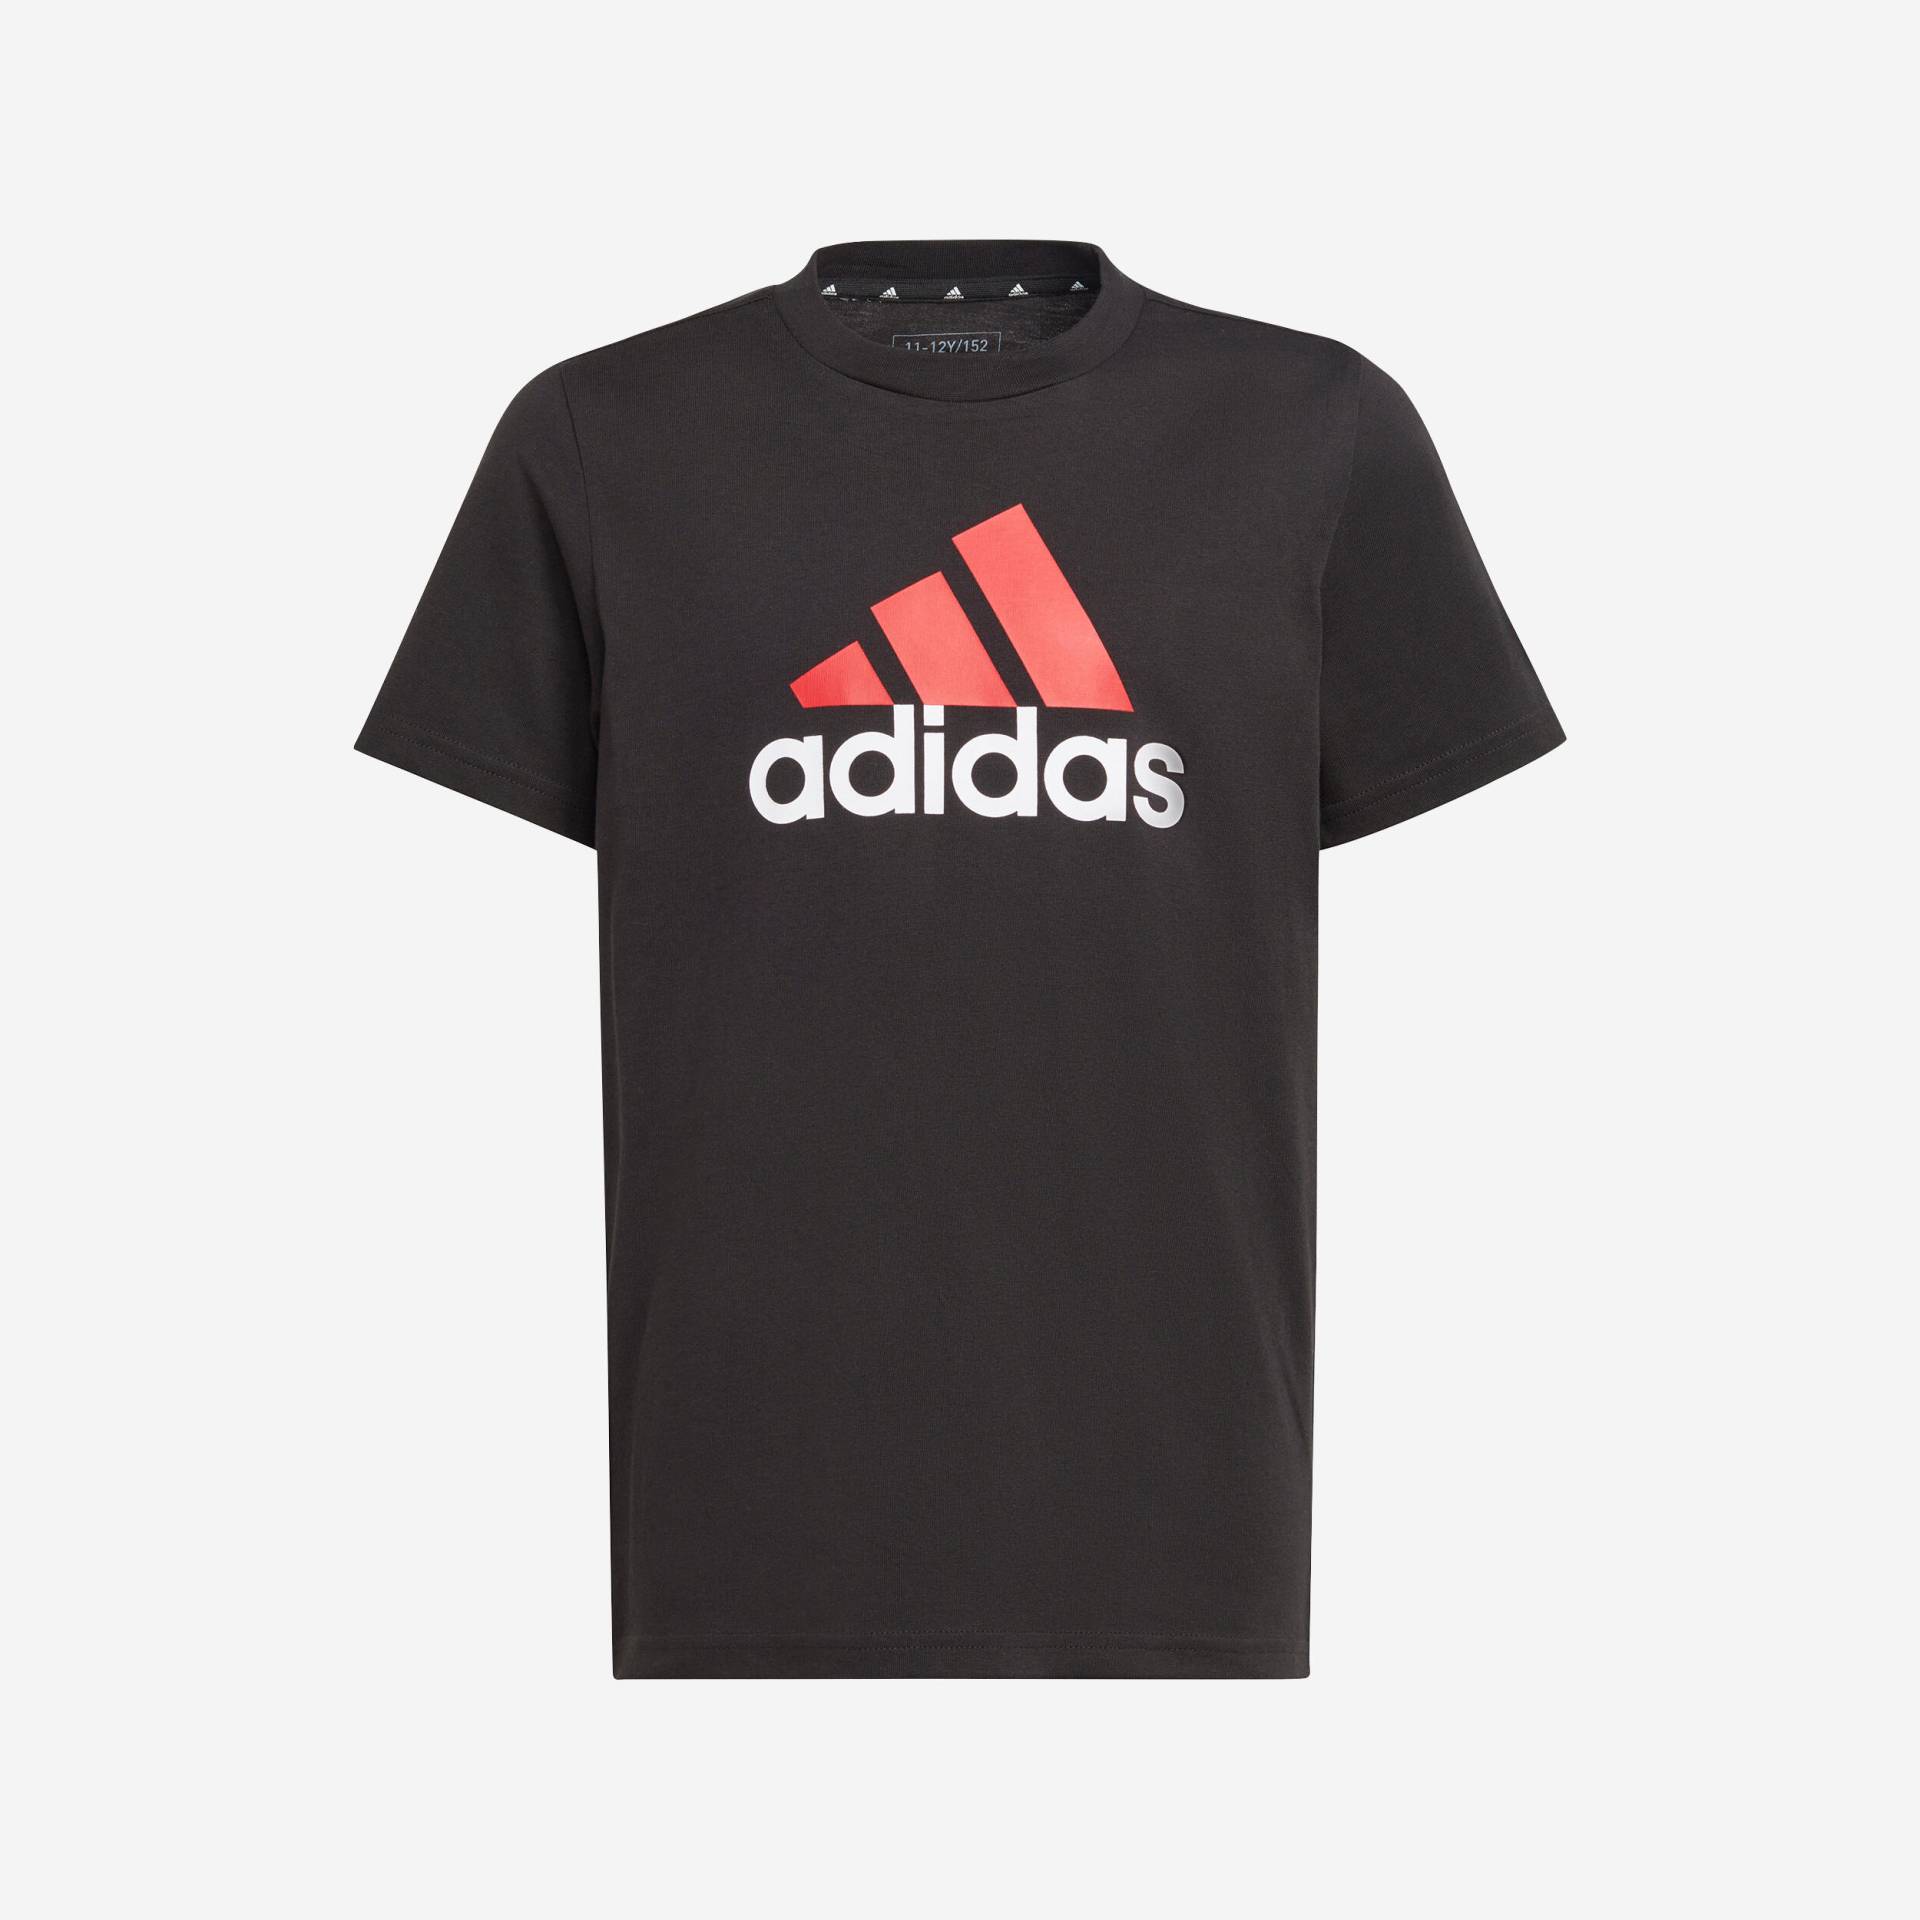 ADIDAS T-Shirt Kinder - schwarz mit rotem Logo von Adidas